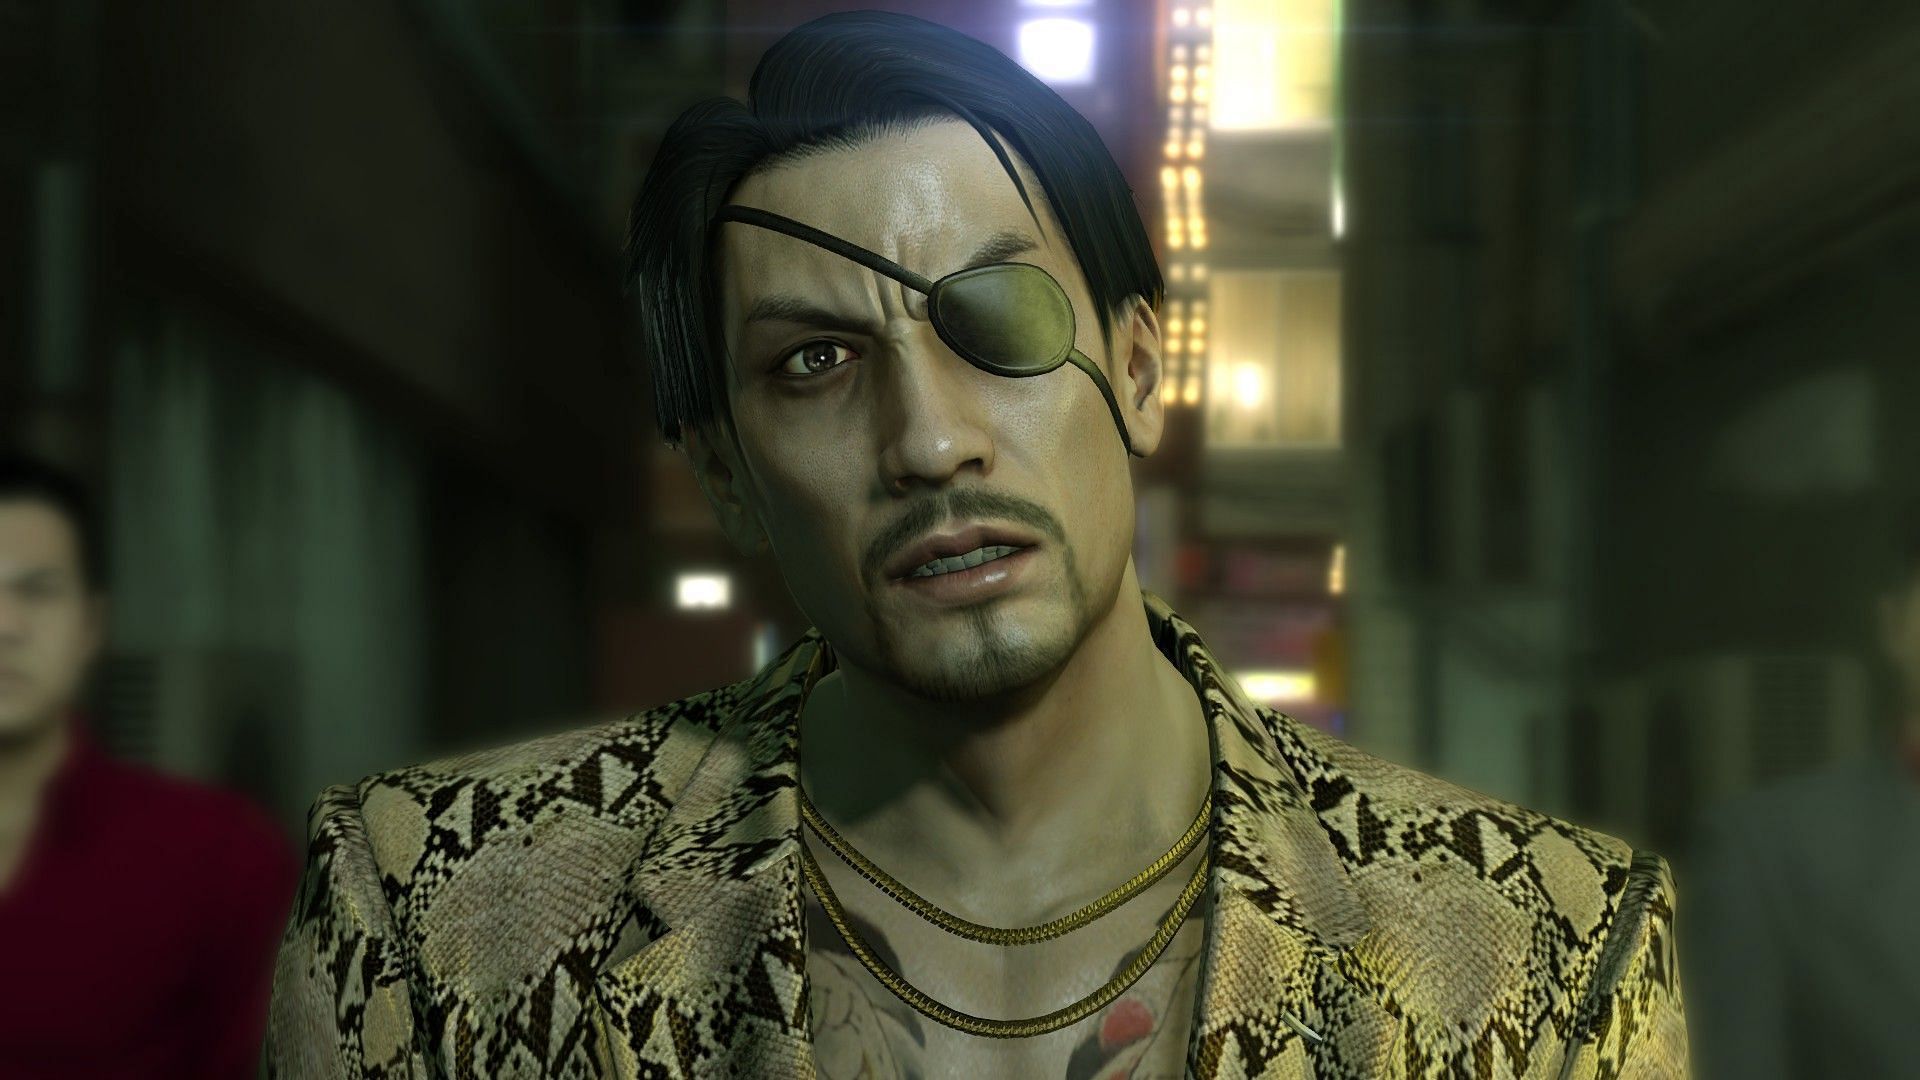 Goro Majima is one of the most stylish characters in Yakuza games (Image via Capcom)